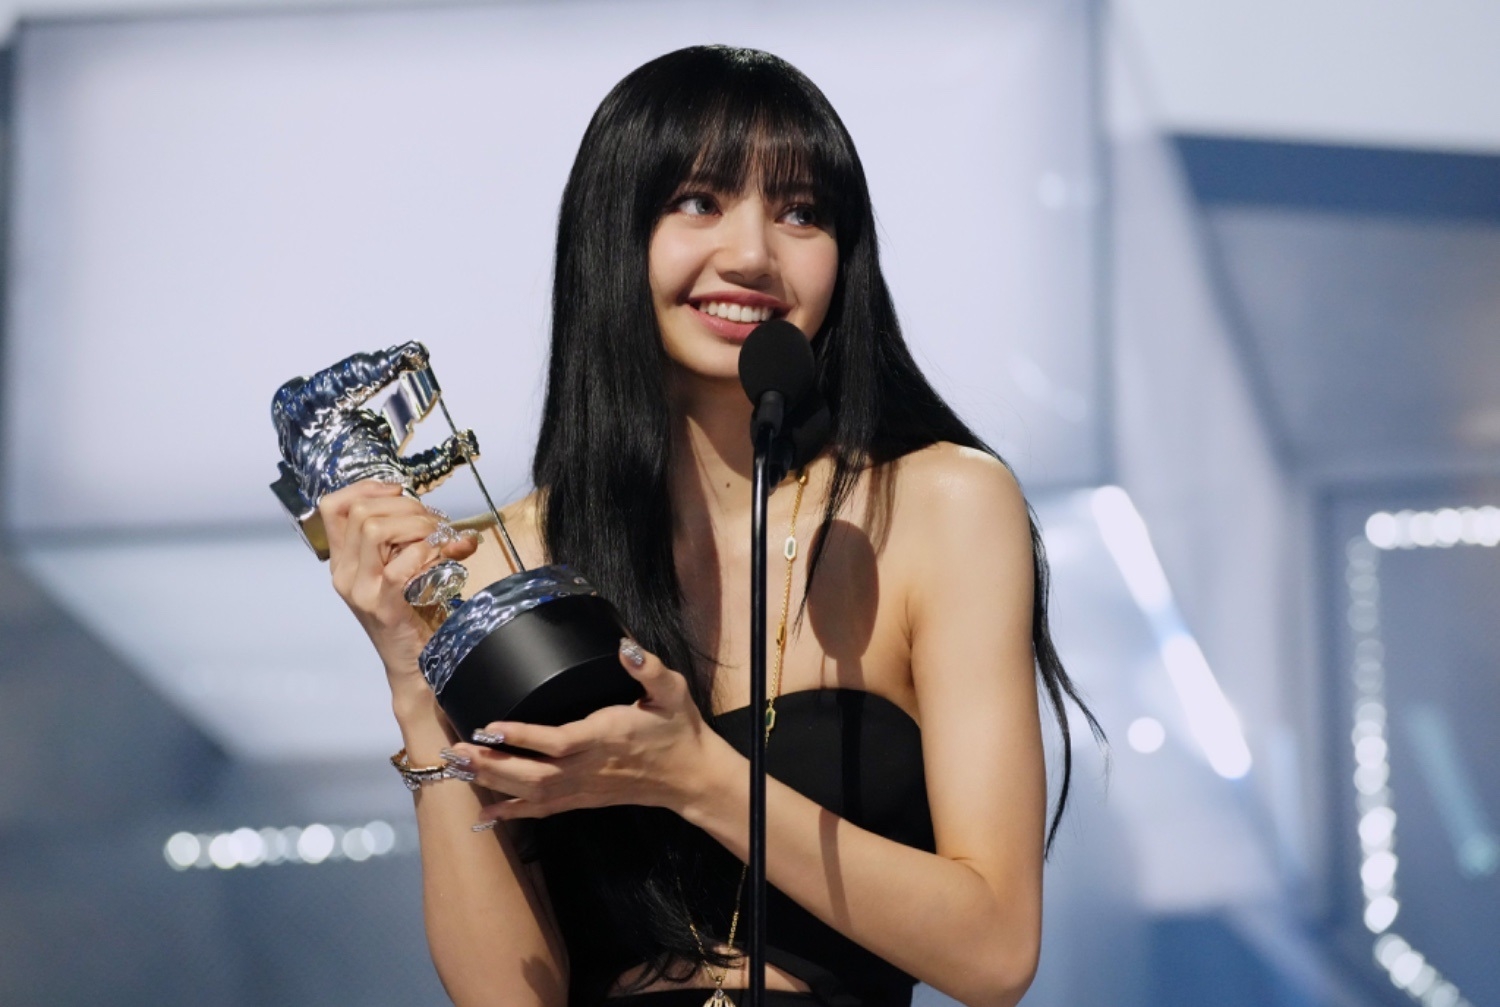 Sao Hàn hôm nay 30/8: Lisa (BLACKPINK) thắng giải Best K-pop tại VMAs với “LALISA”